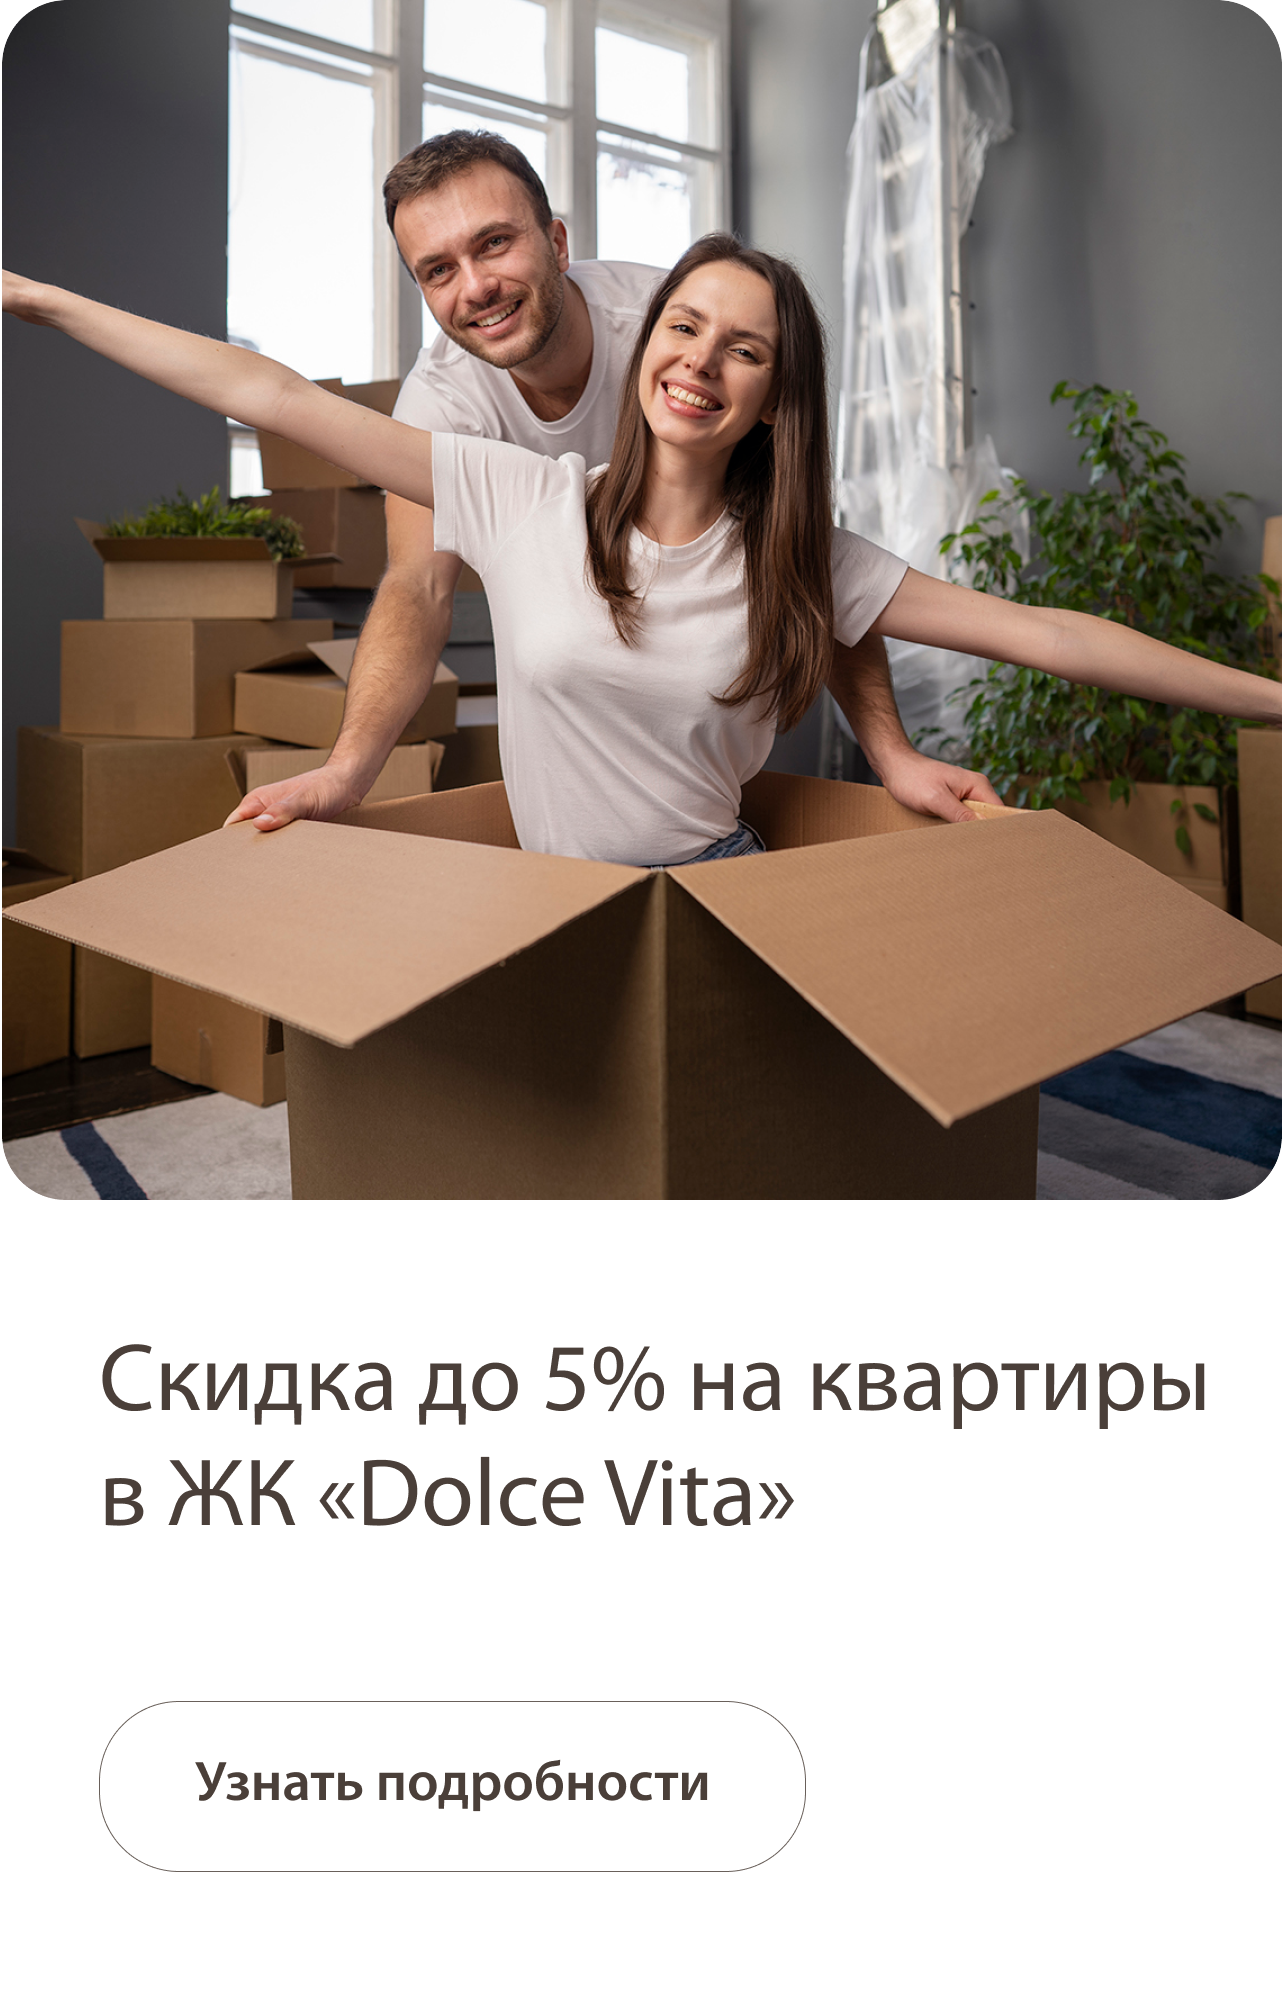 Скидка до 5% на квартиры в ЖК «Dolce vita»